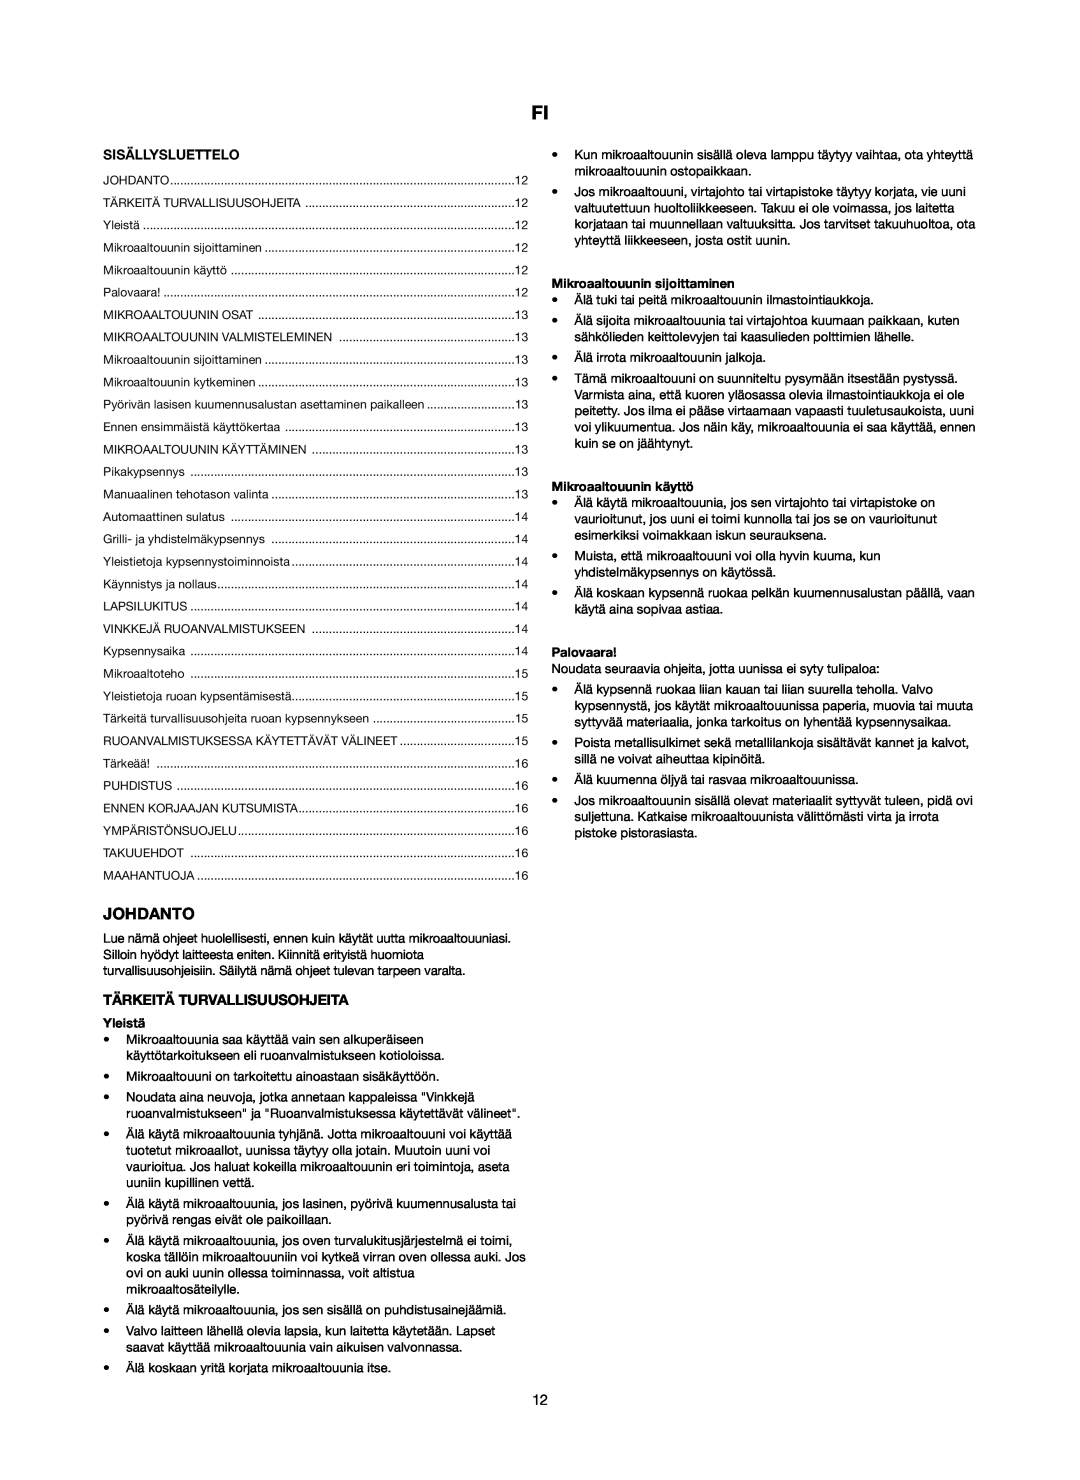 Melissa 253-006 manual Johdanto, Tärkeitä Turvallisuusohjeita, Sisällysluettelo, Yleistä, Mikroaaltouunin sijoittaminen 